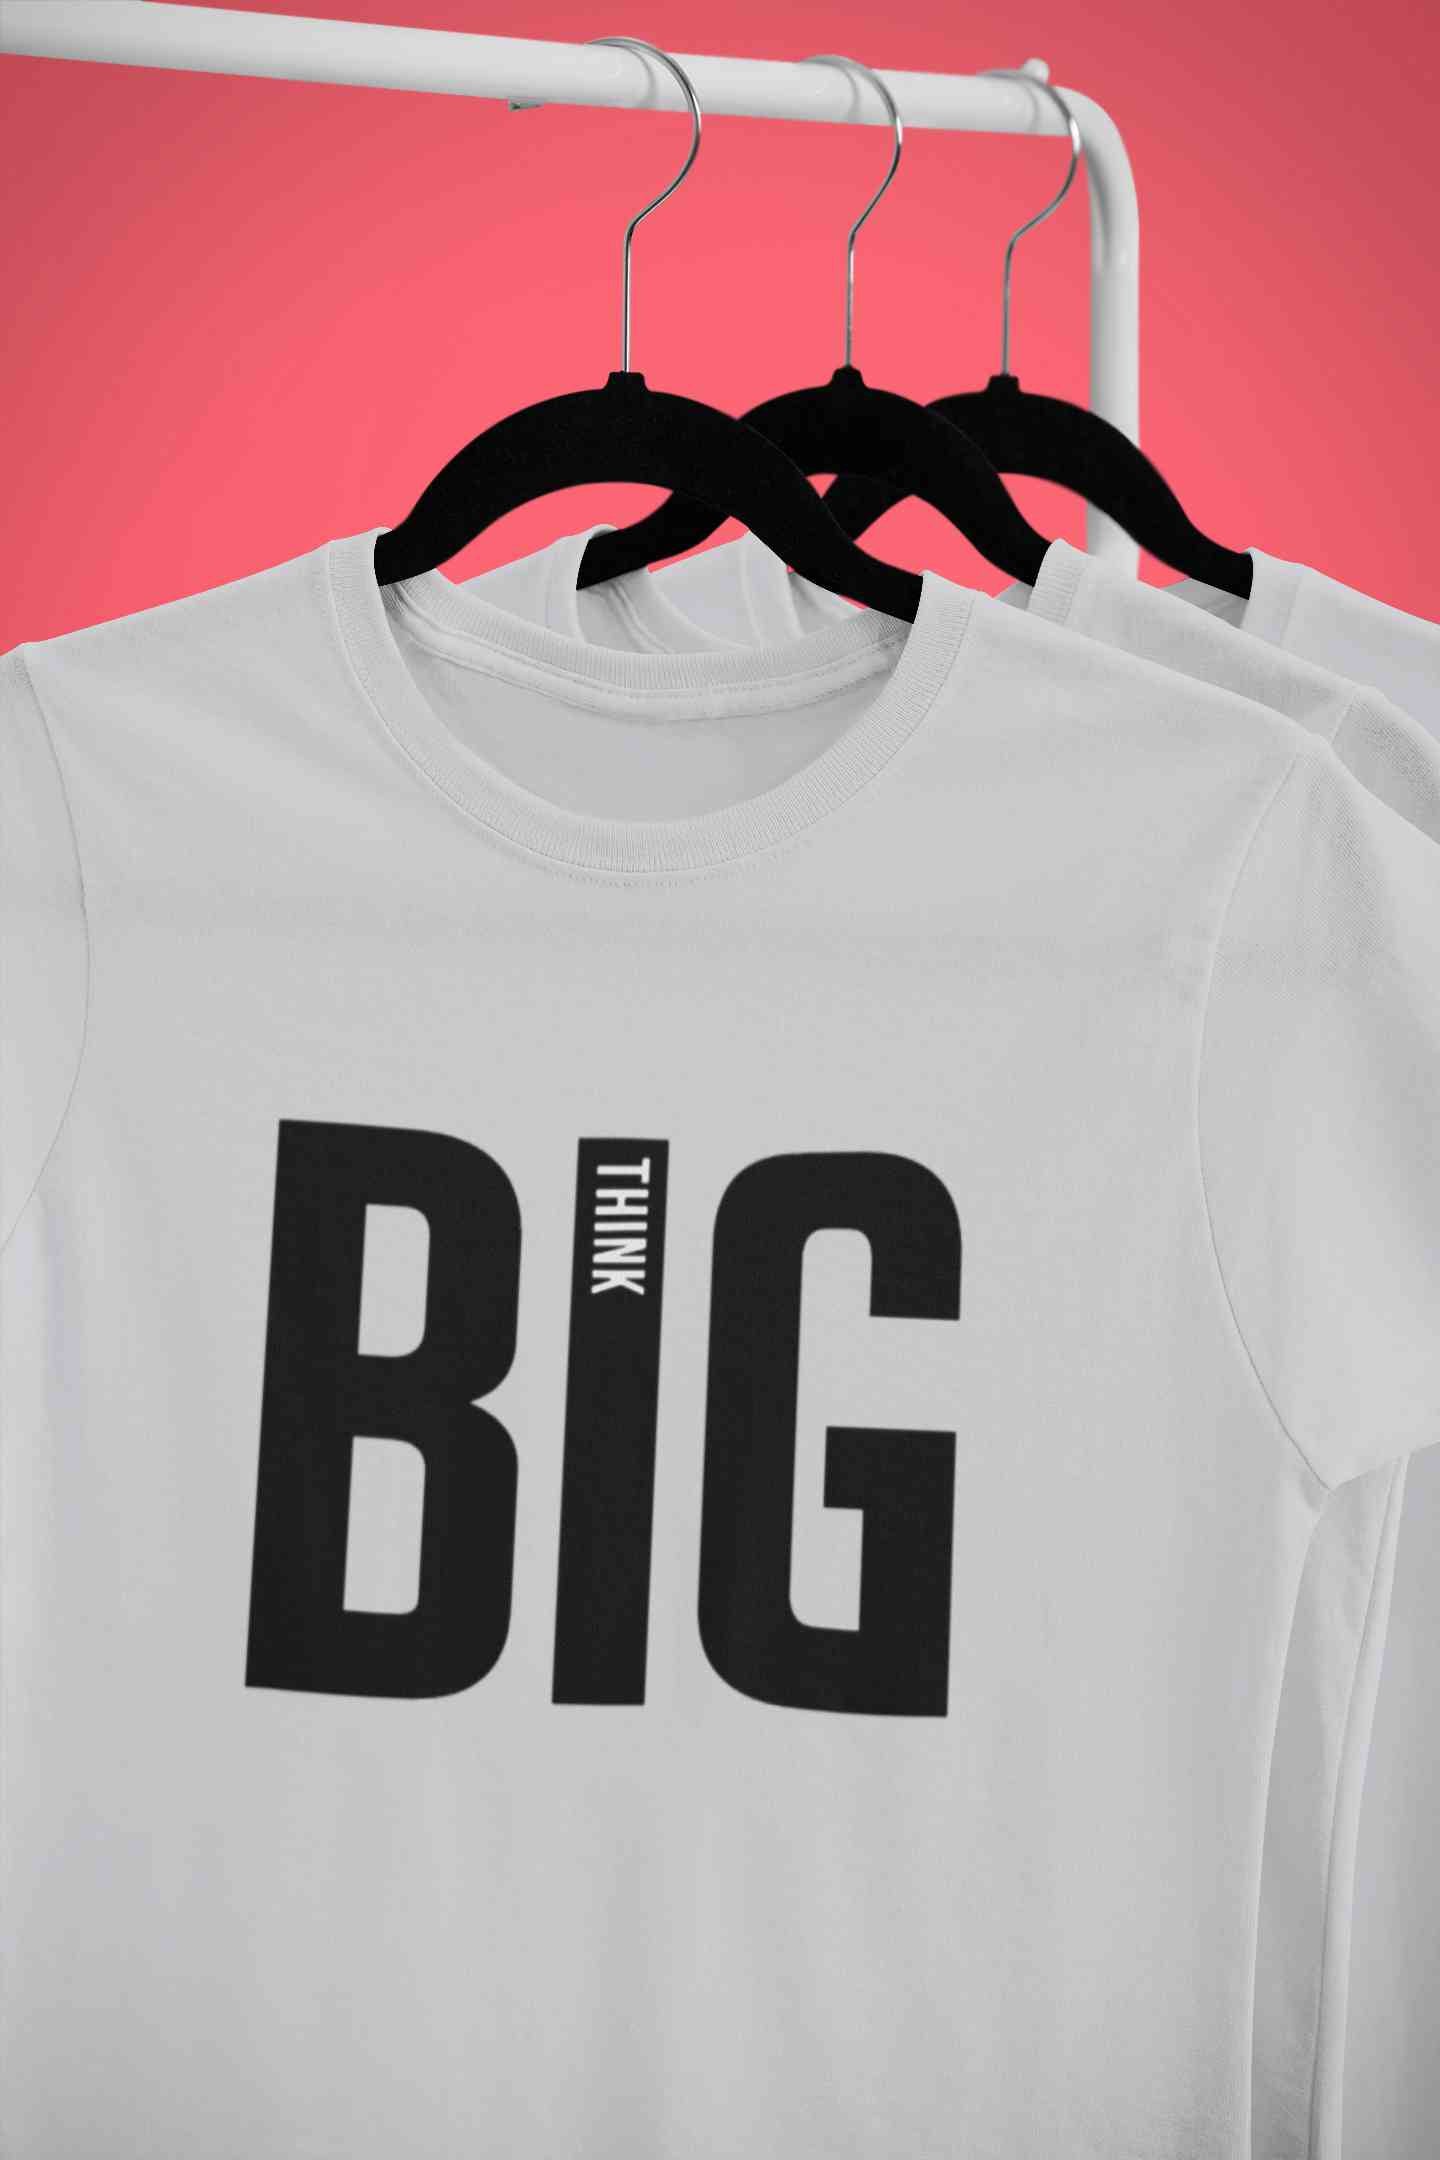 Think Big Mens Half Sleeves T-shirt- FunkyTeesClub